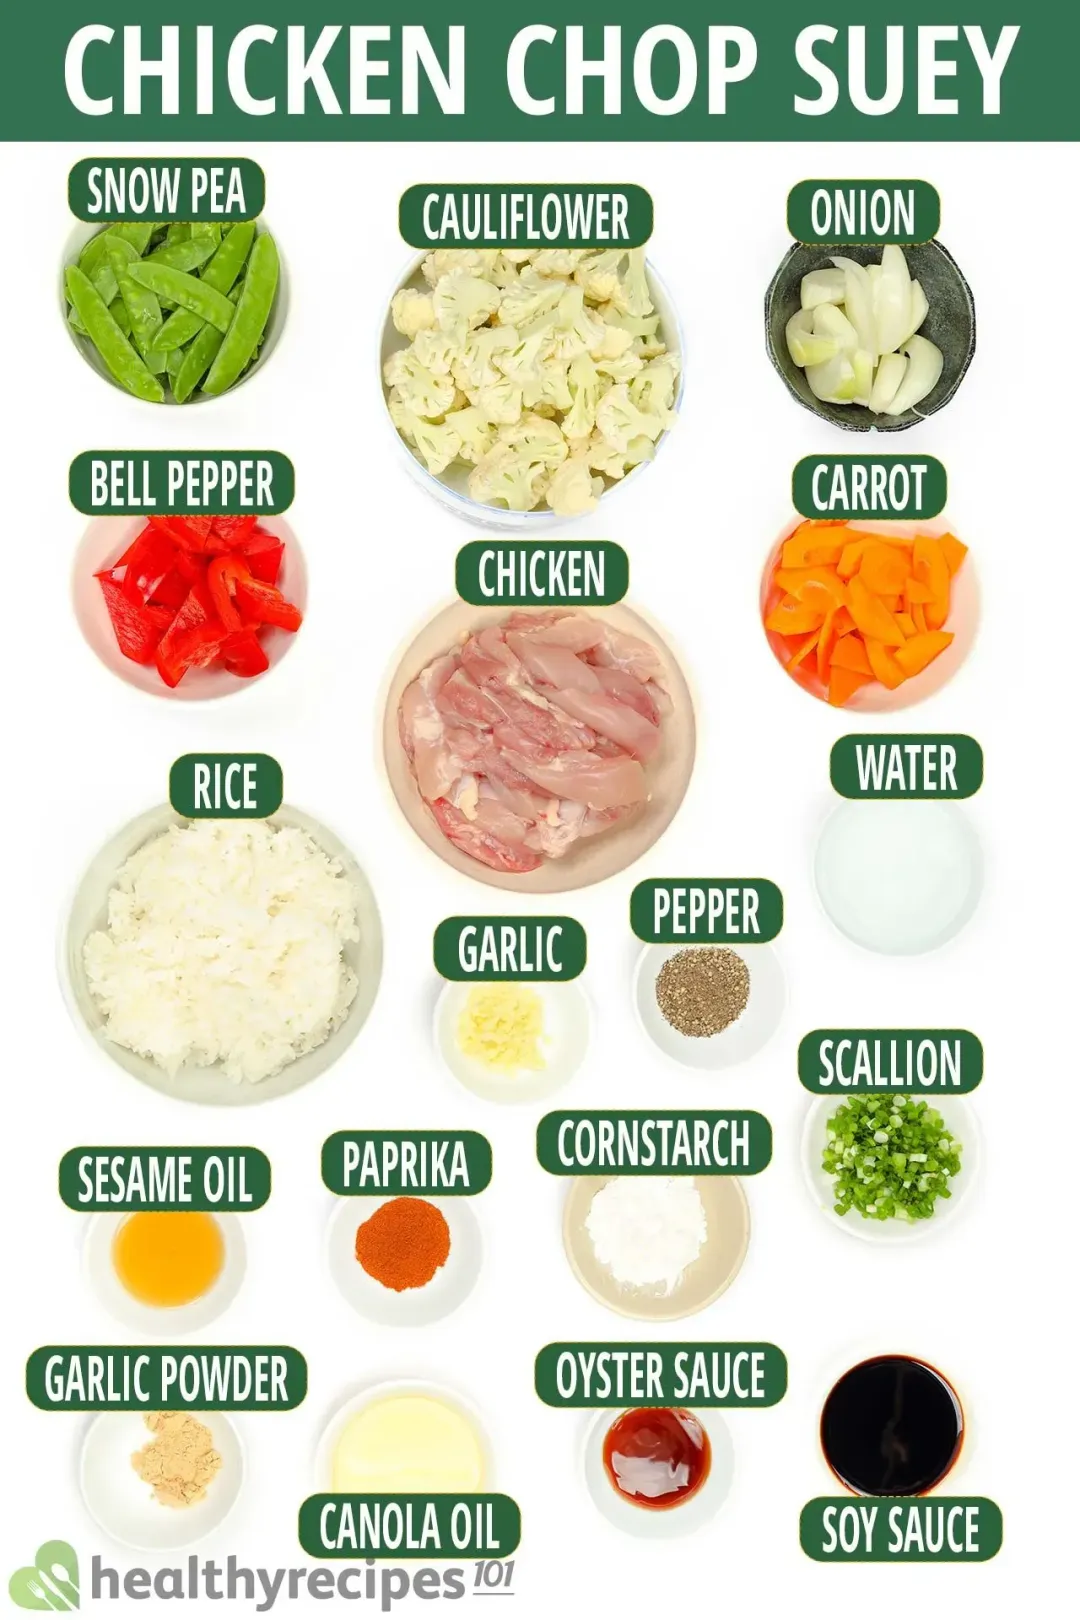 Ingredients for Chicken Chop Suey